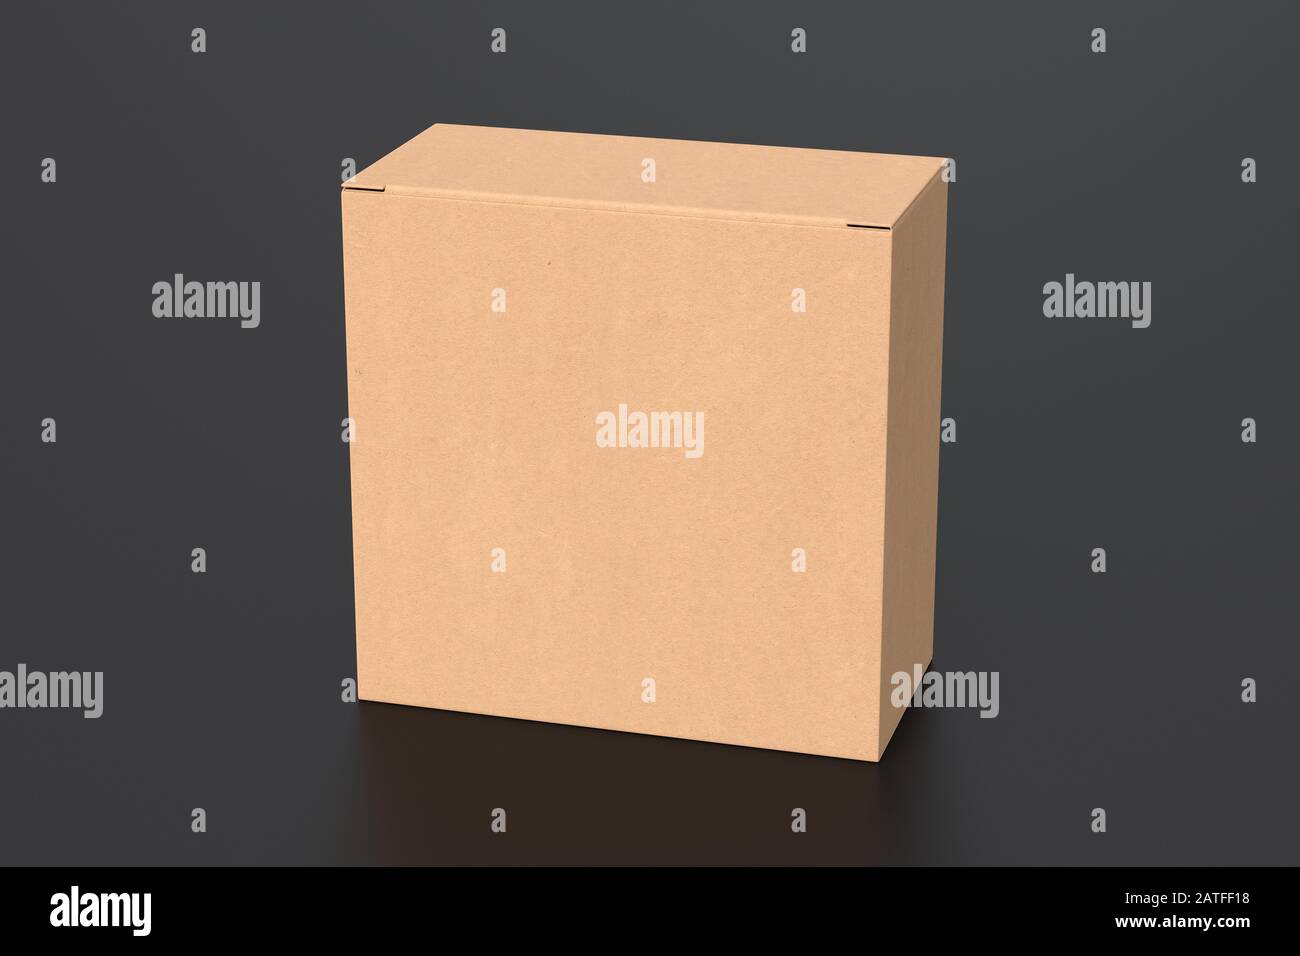 Boîte carrée large en carton vierge avec couvercle à rabat fermé sur fond noir. Chemin de détourage autour de la maquette de boîte Banque D'Images